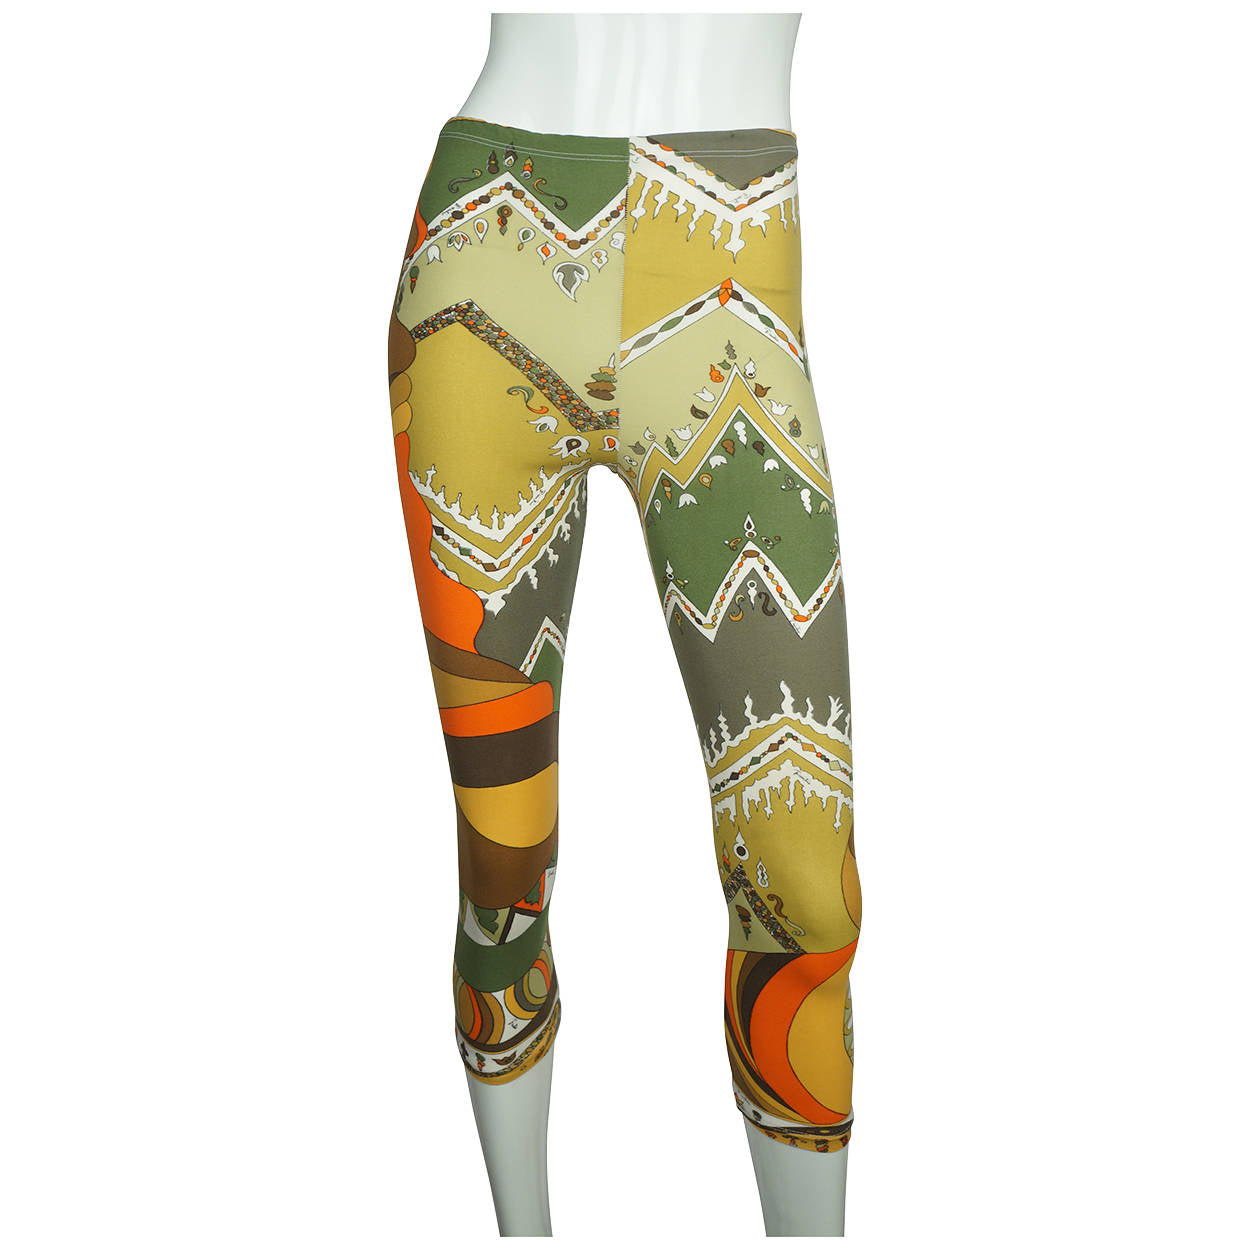 Buy Emilio Pucci leggings on sale